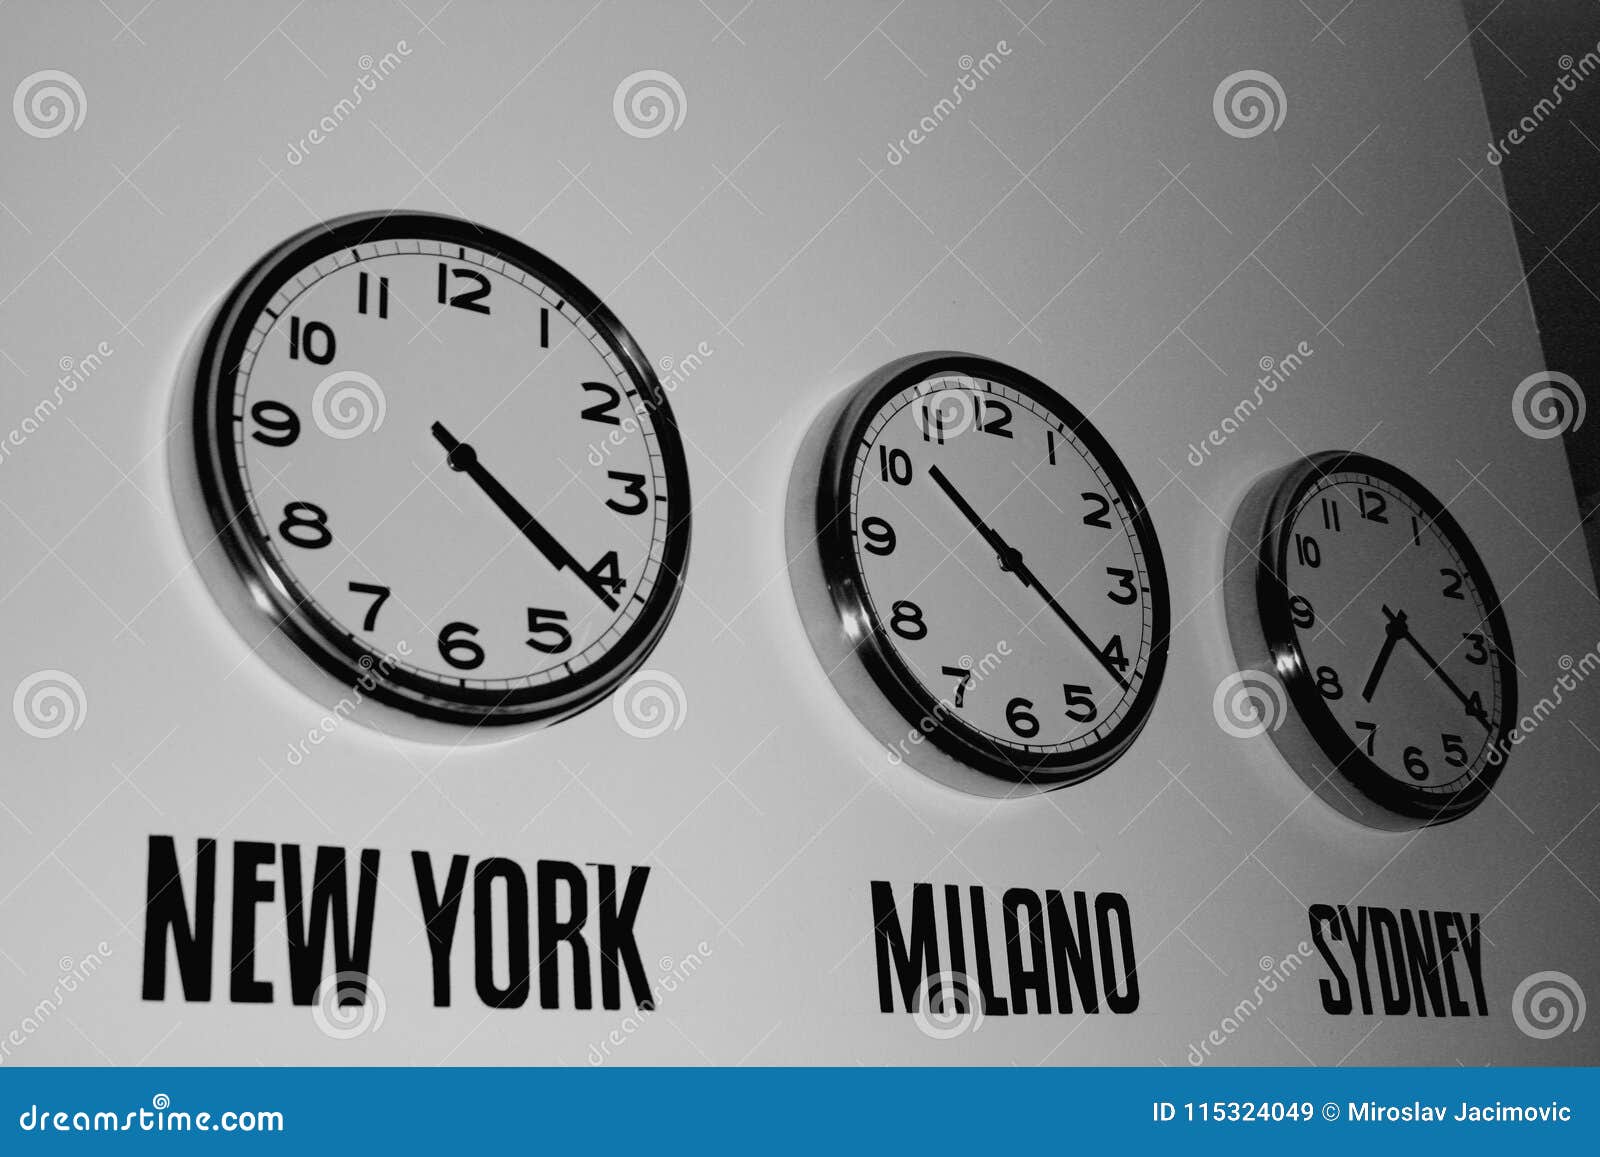 Time will turning time. Часы на стену мировое время. Стена с часами, показывающими Разное время. Стена с часами мировое время. Часы показывает время на стене.